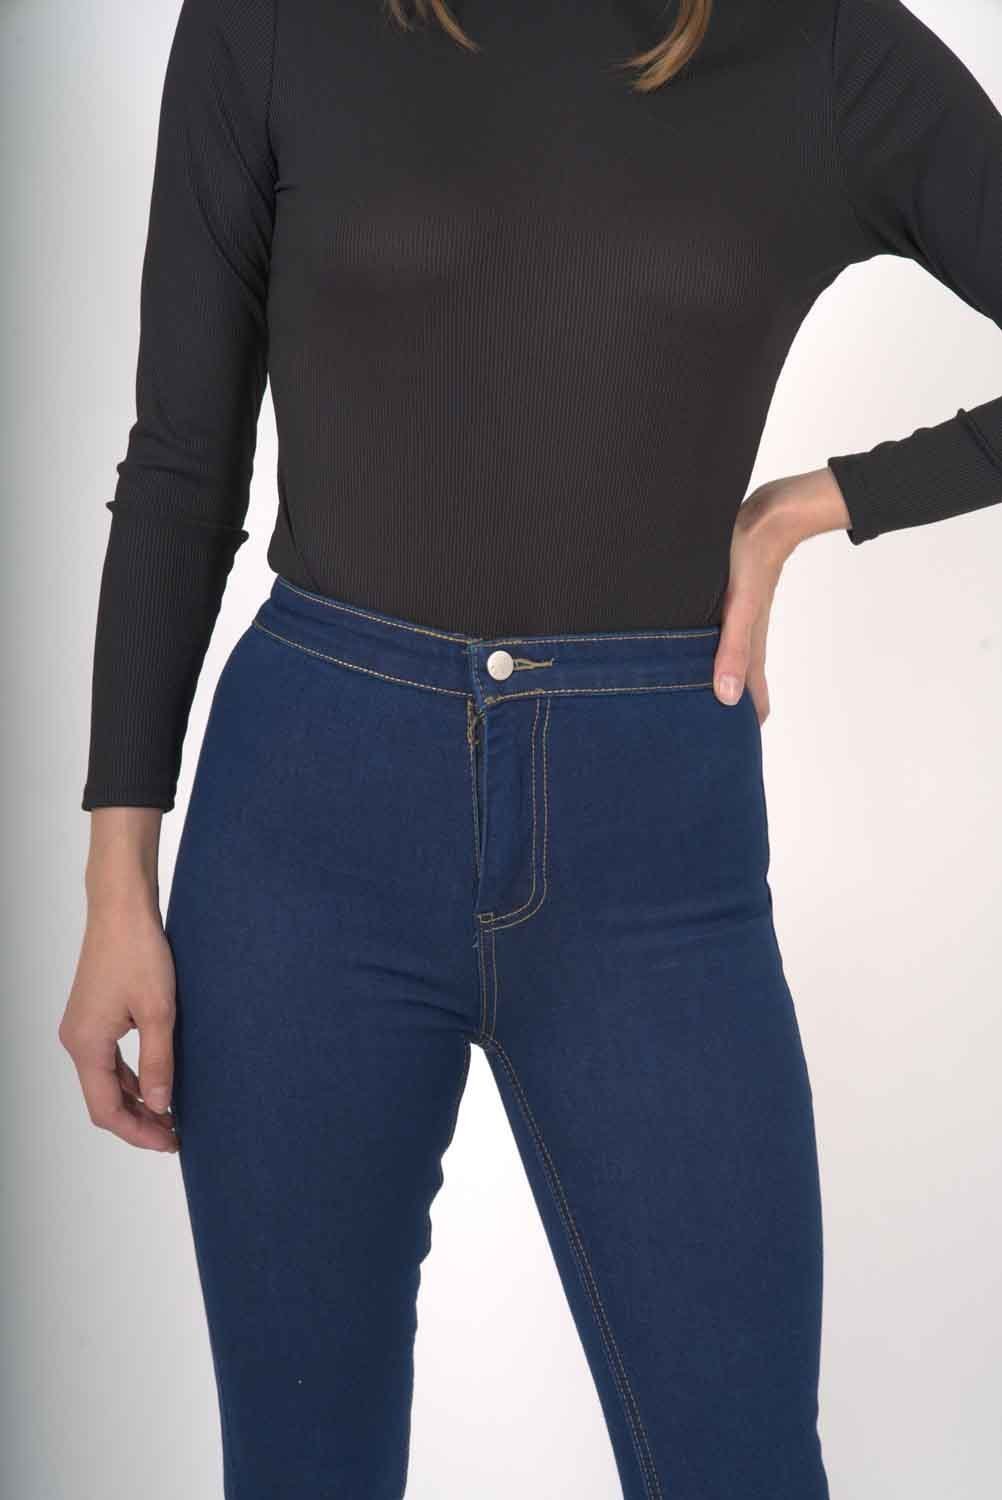 Women's Sierra Skinny Jeans - Women - Apparel - Pants - Jeans - Benn~Burry